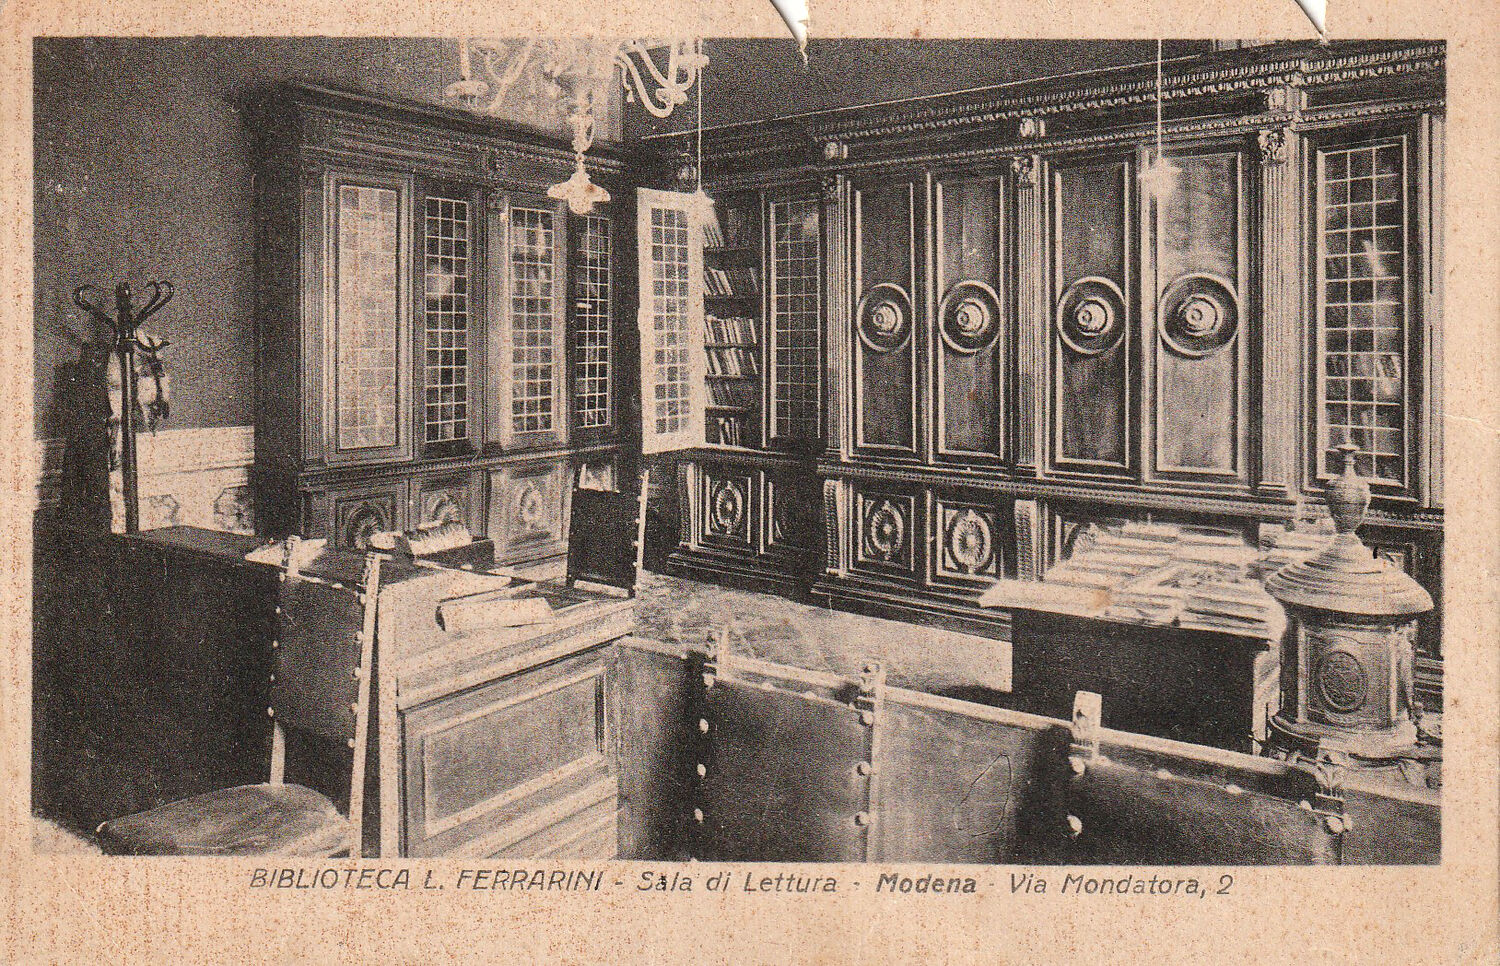 Interno della Biblioteca Ferrarini, anni Quaranta (Modena, collezione Bellei).